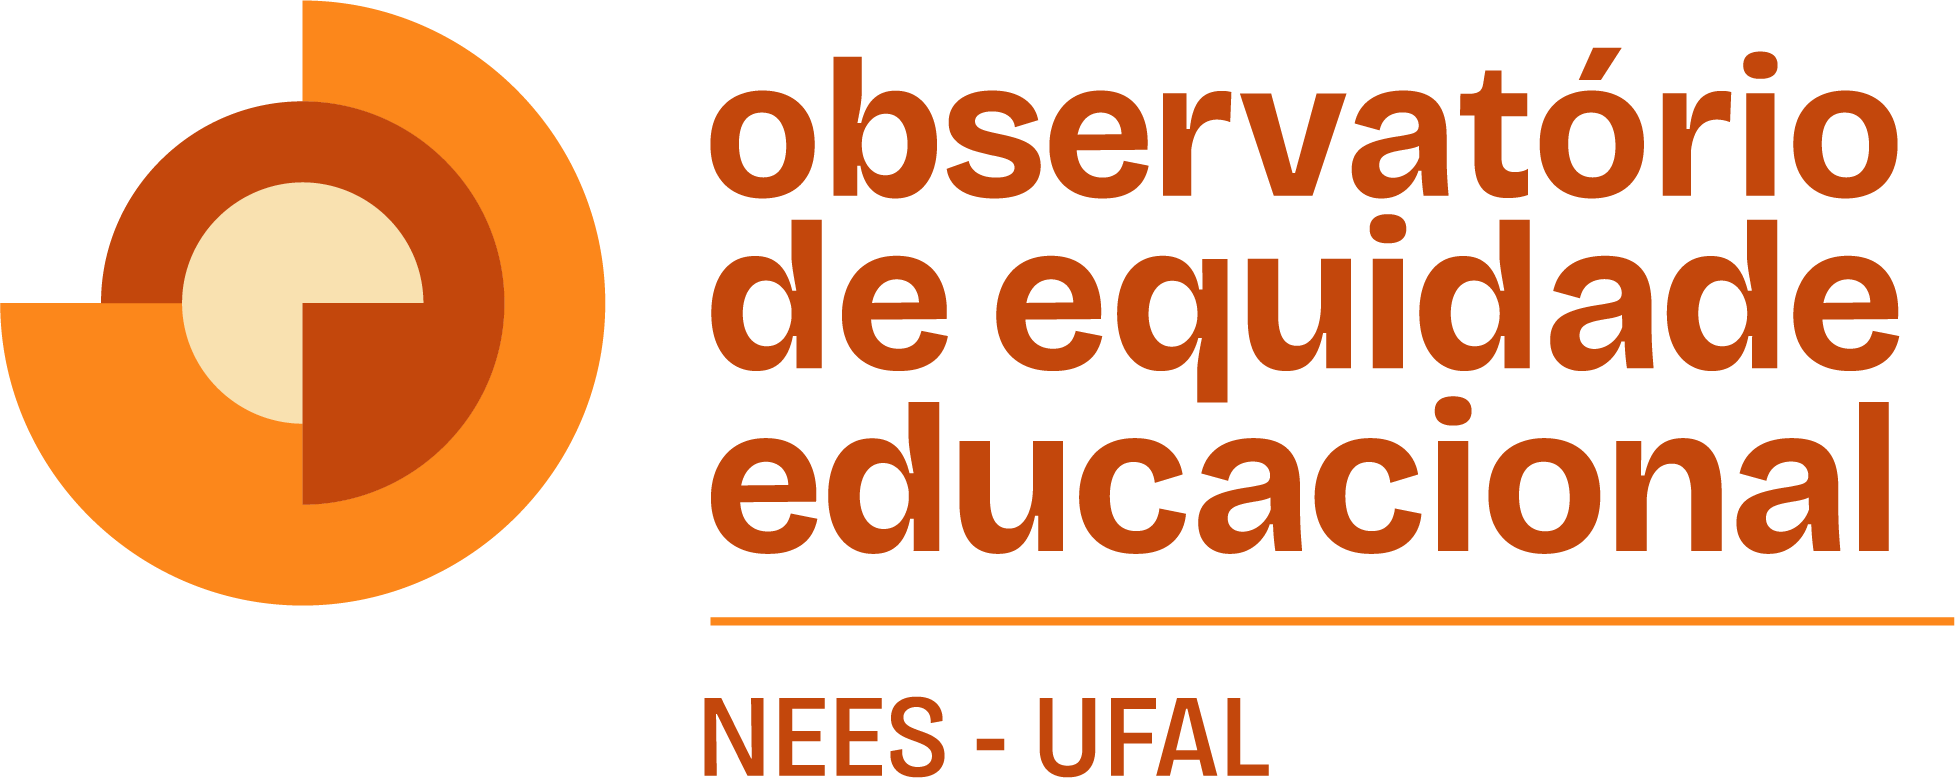 Observatório da Equidade Educacional